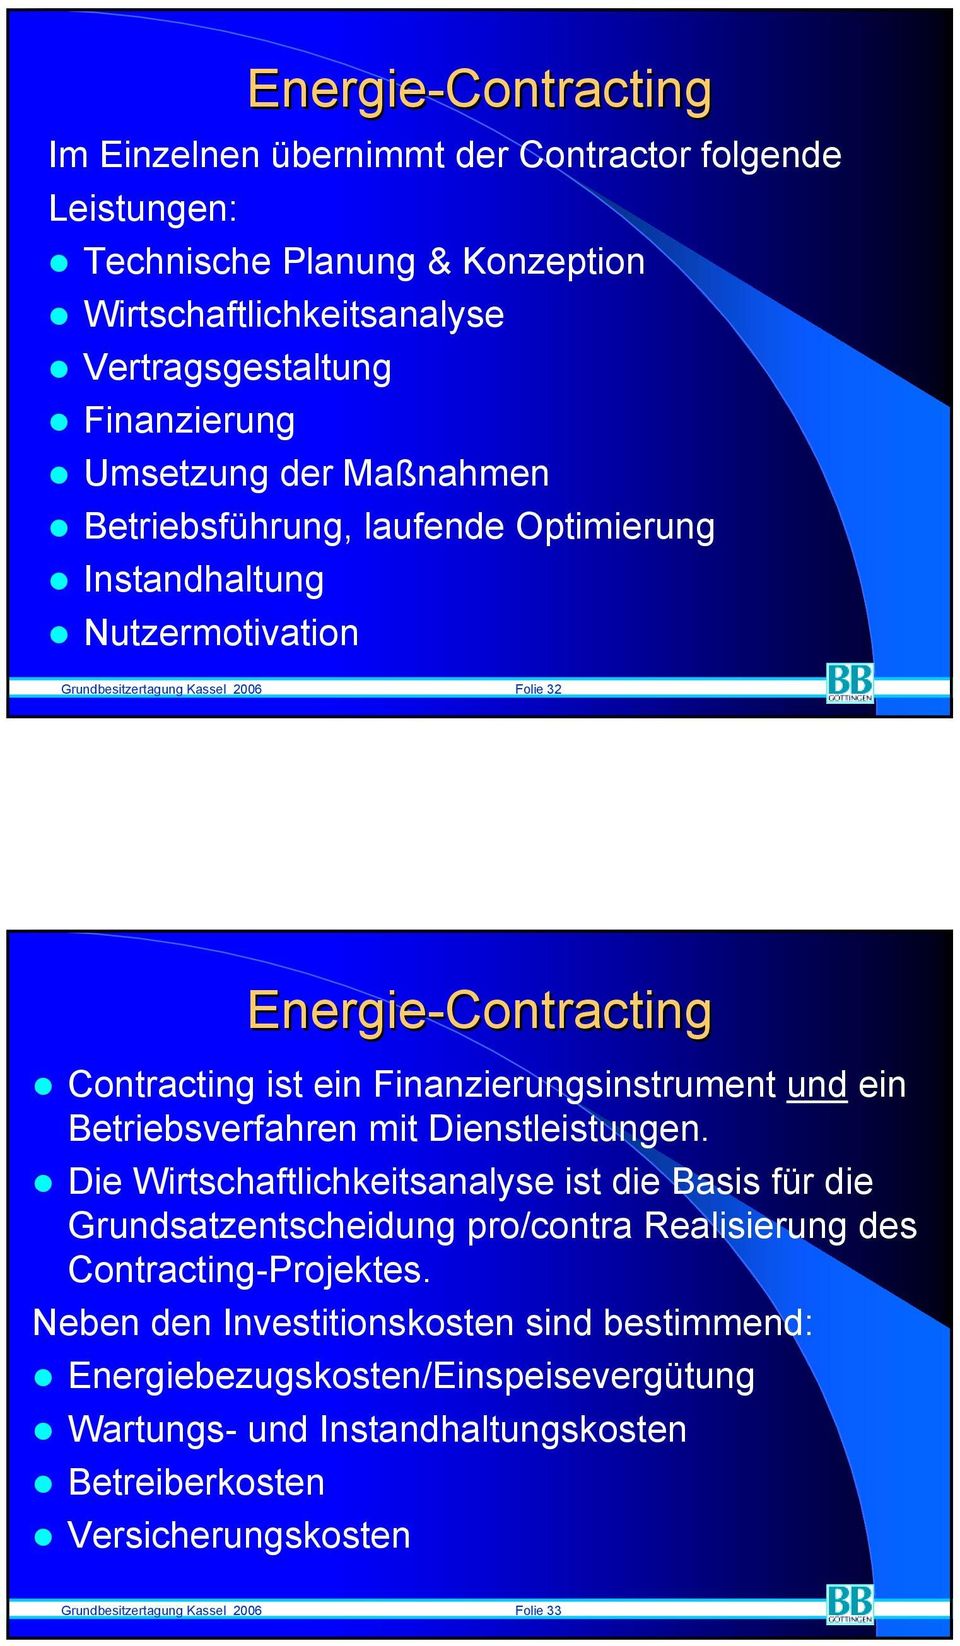 Contracting ist ein Finanzierungsinstrument und ein Betriebsverfahren mit Dienstleistungen.